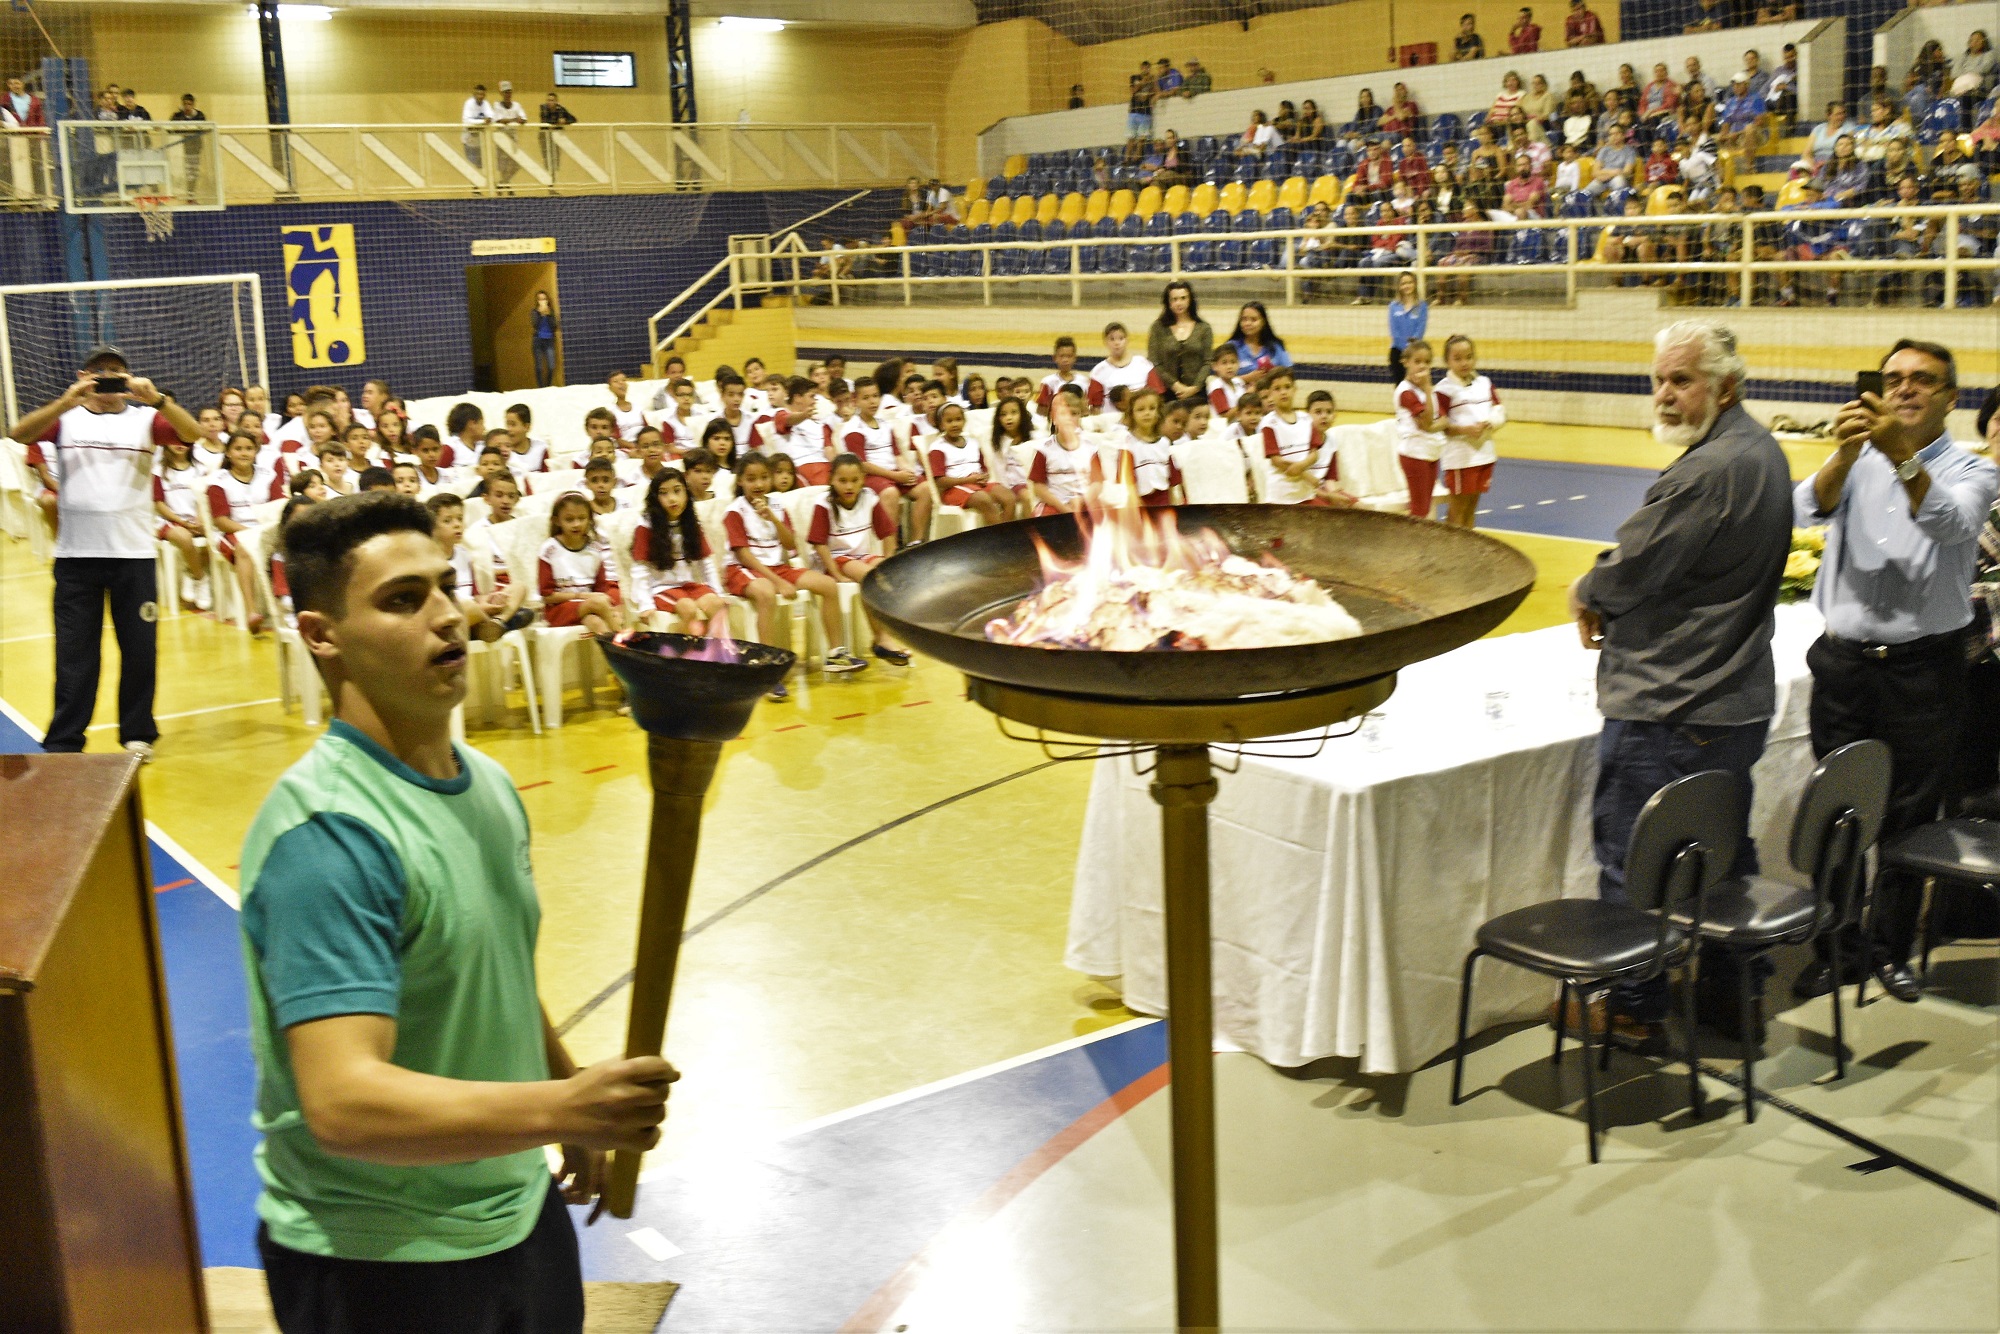 O atleta padrinho, Fernando Perassa Munhais, acende a tocha olímpica simbolizando o lançamento oficial do Programa em Urupês.